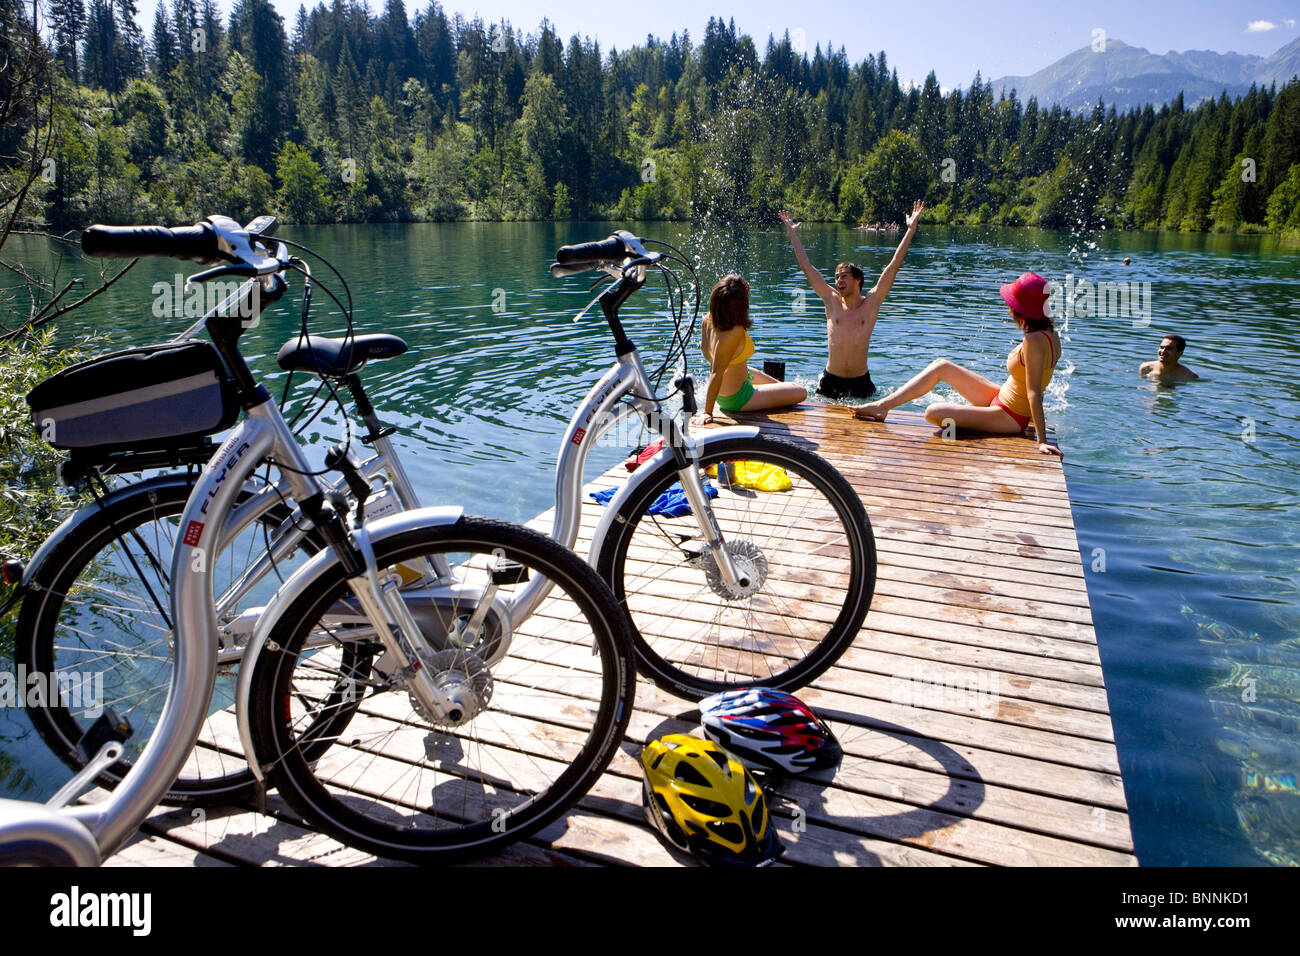 La Suisse Suisse baignoire chat Crestasee eté sport temps libre des vélos électriques canton des Grisons Grisons Suisse Groupe baignent Banque D'Images